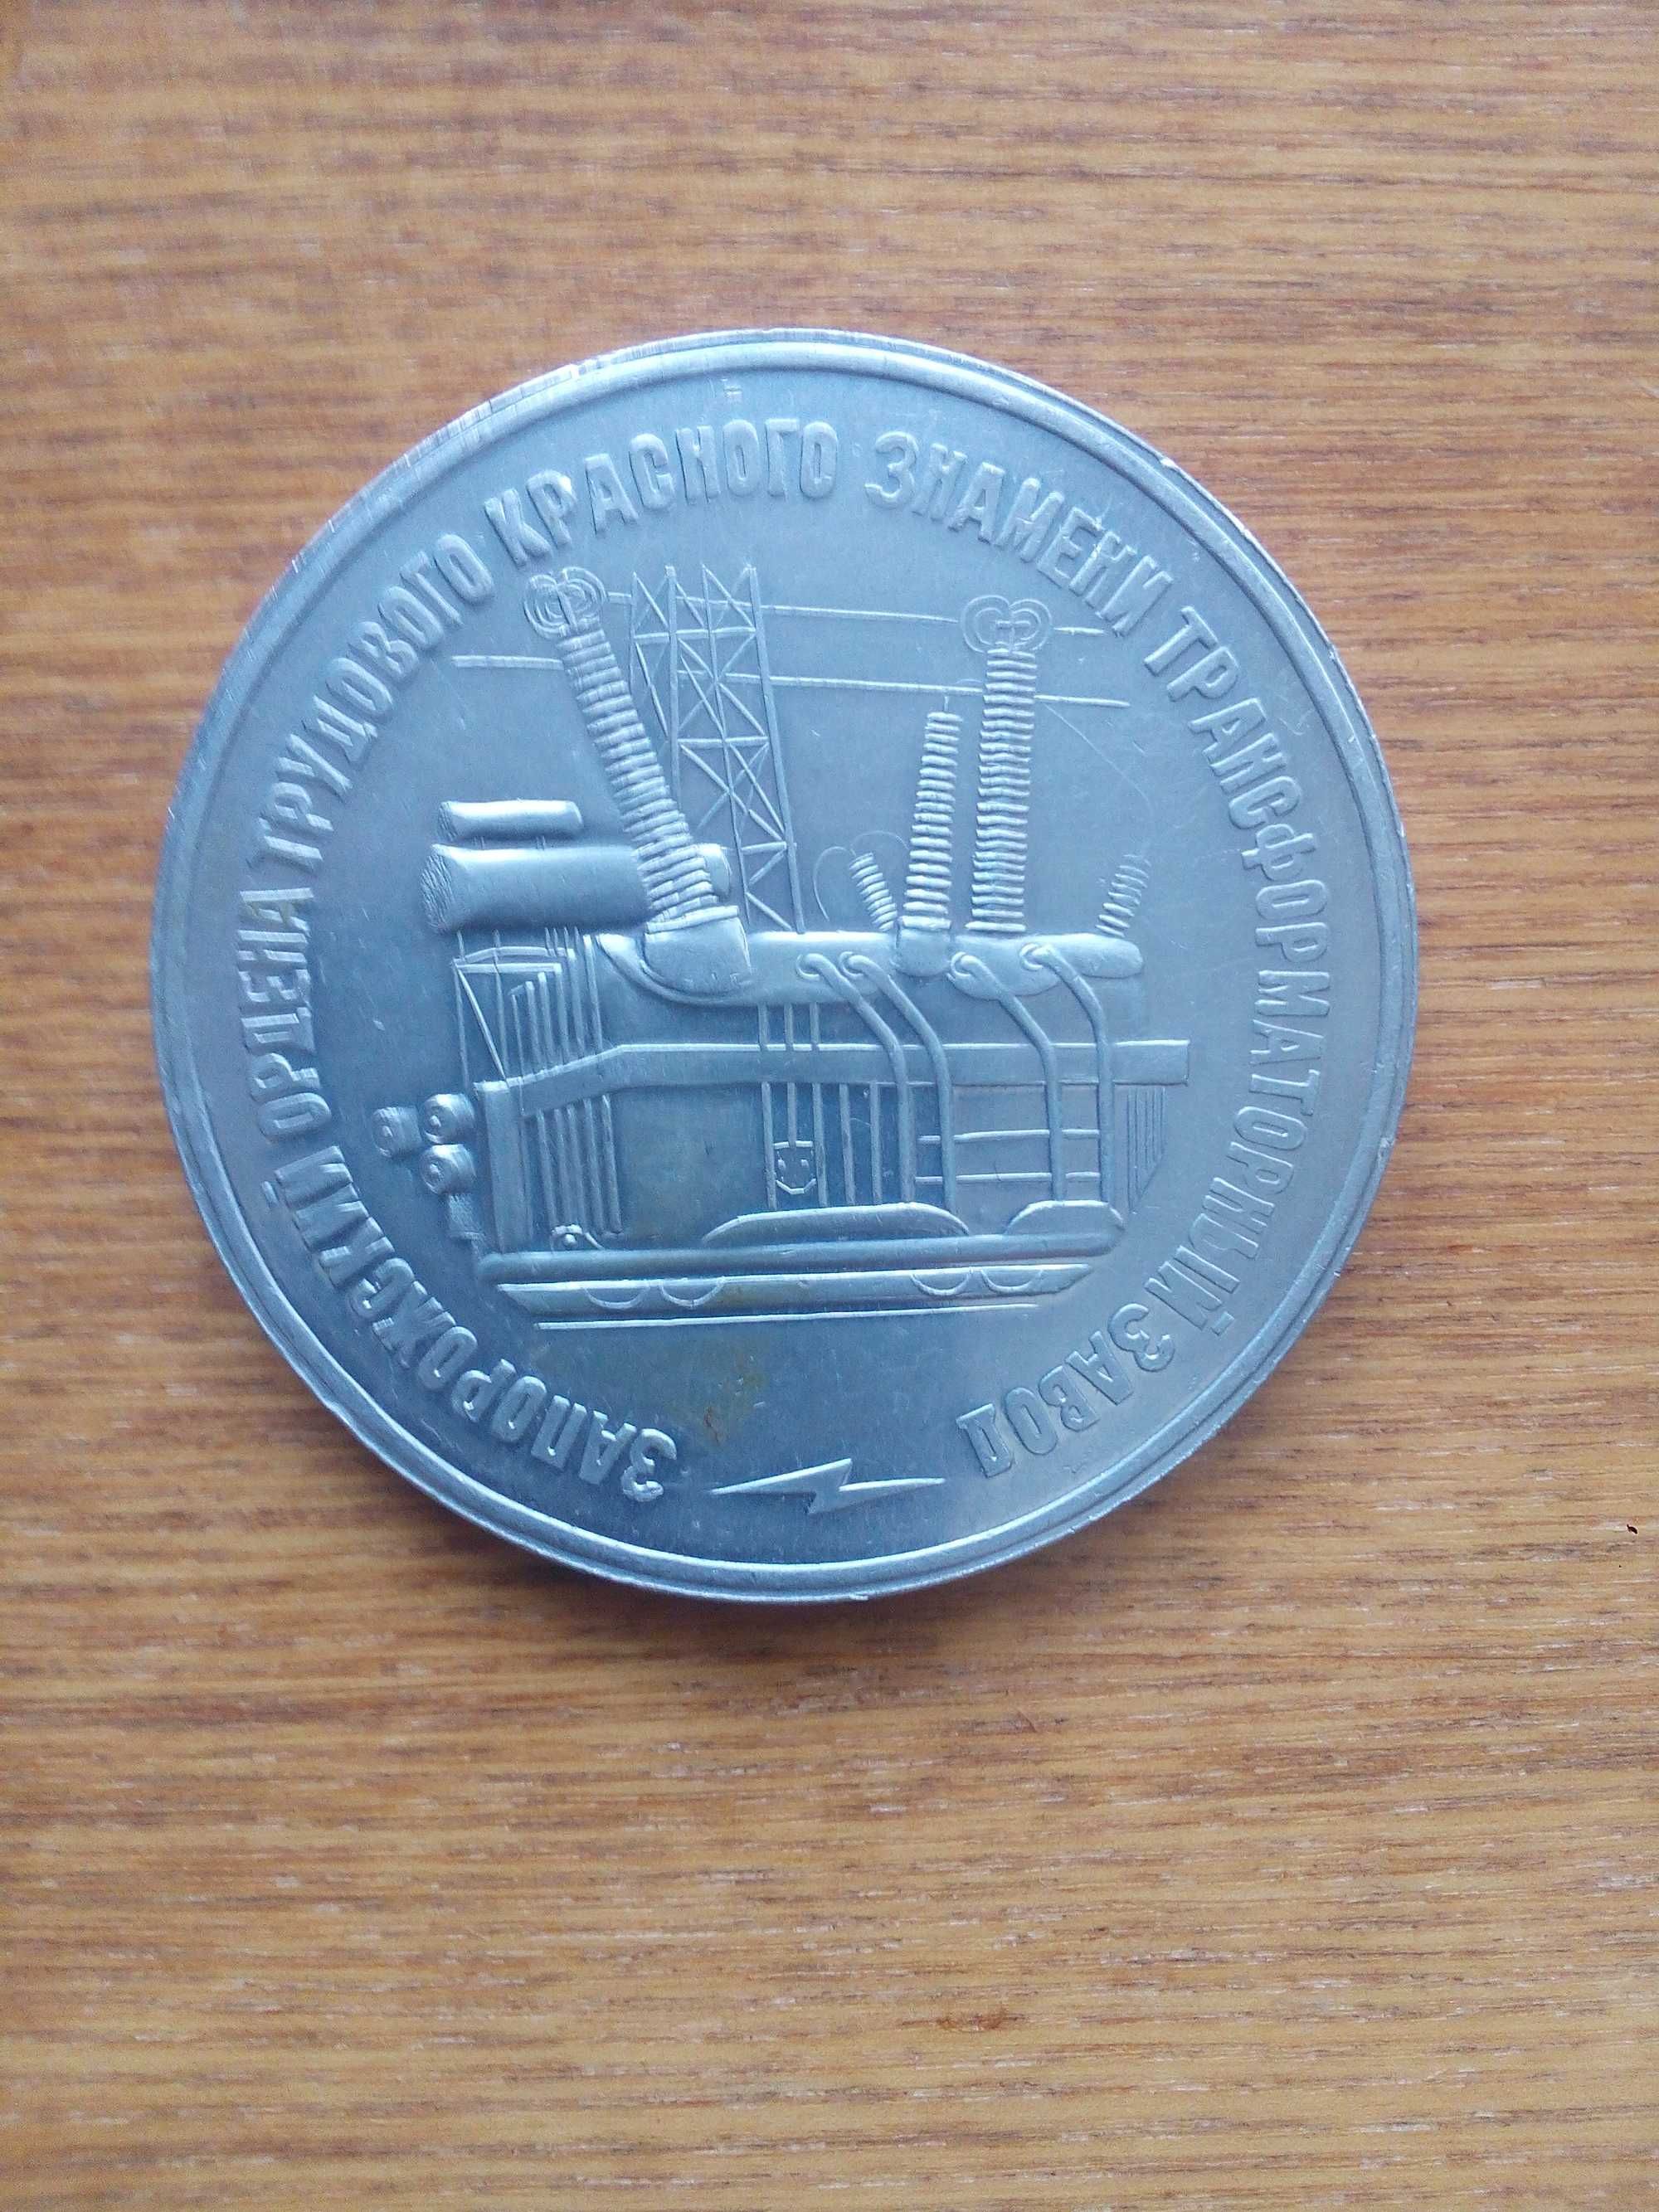 Продам настольную медаль из титана, запорожский трансформаторный завод